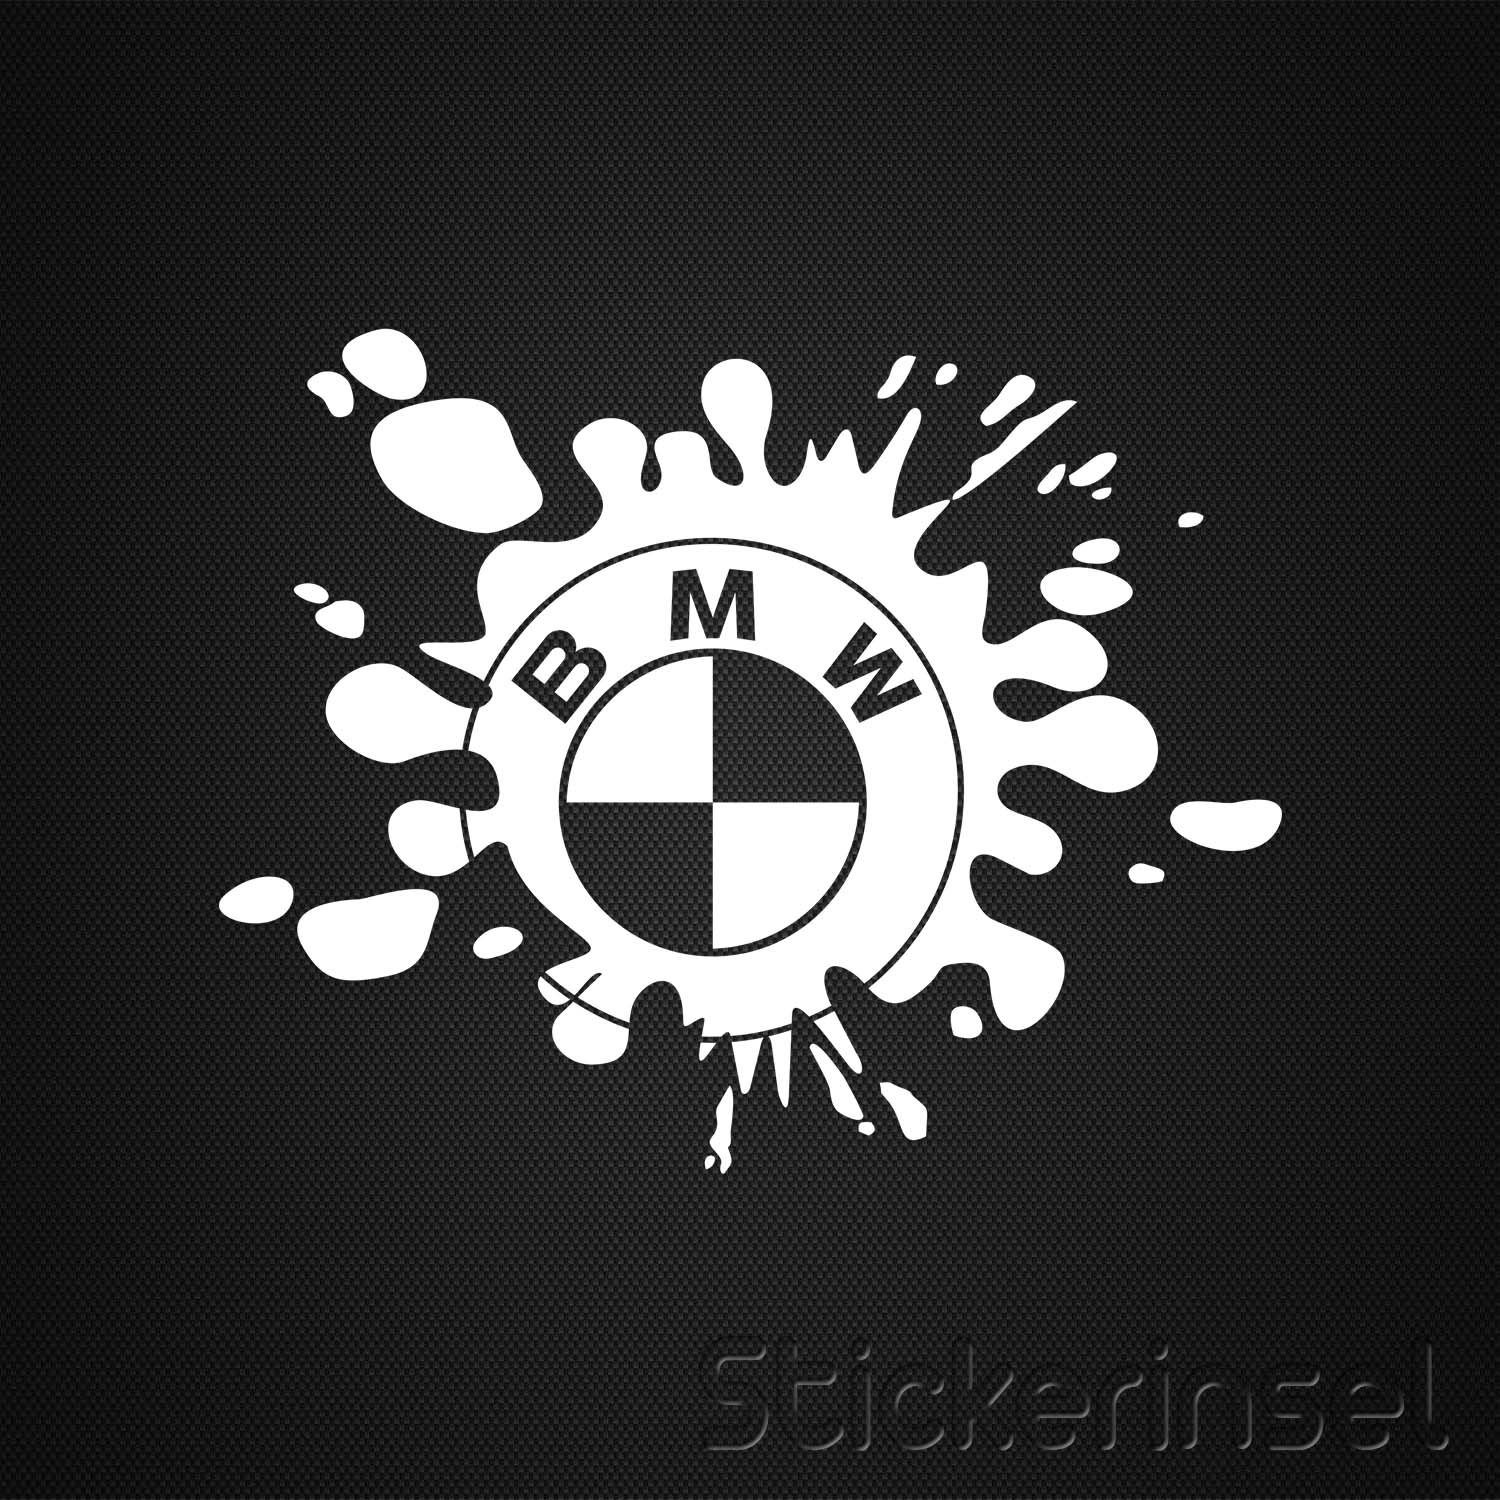 https://www.stickerinsel.at/wp-content/uploads/2016/05/Stickerinsel_Autoaufkleber_BMW-Fleck.jpg